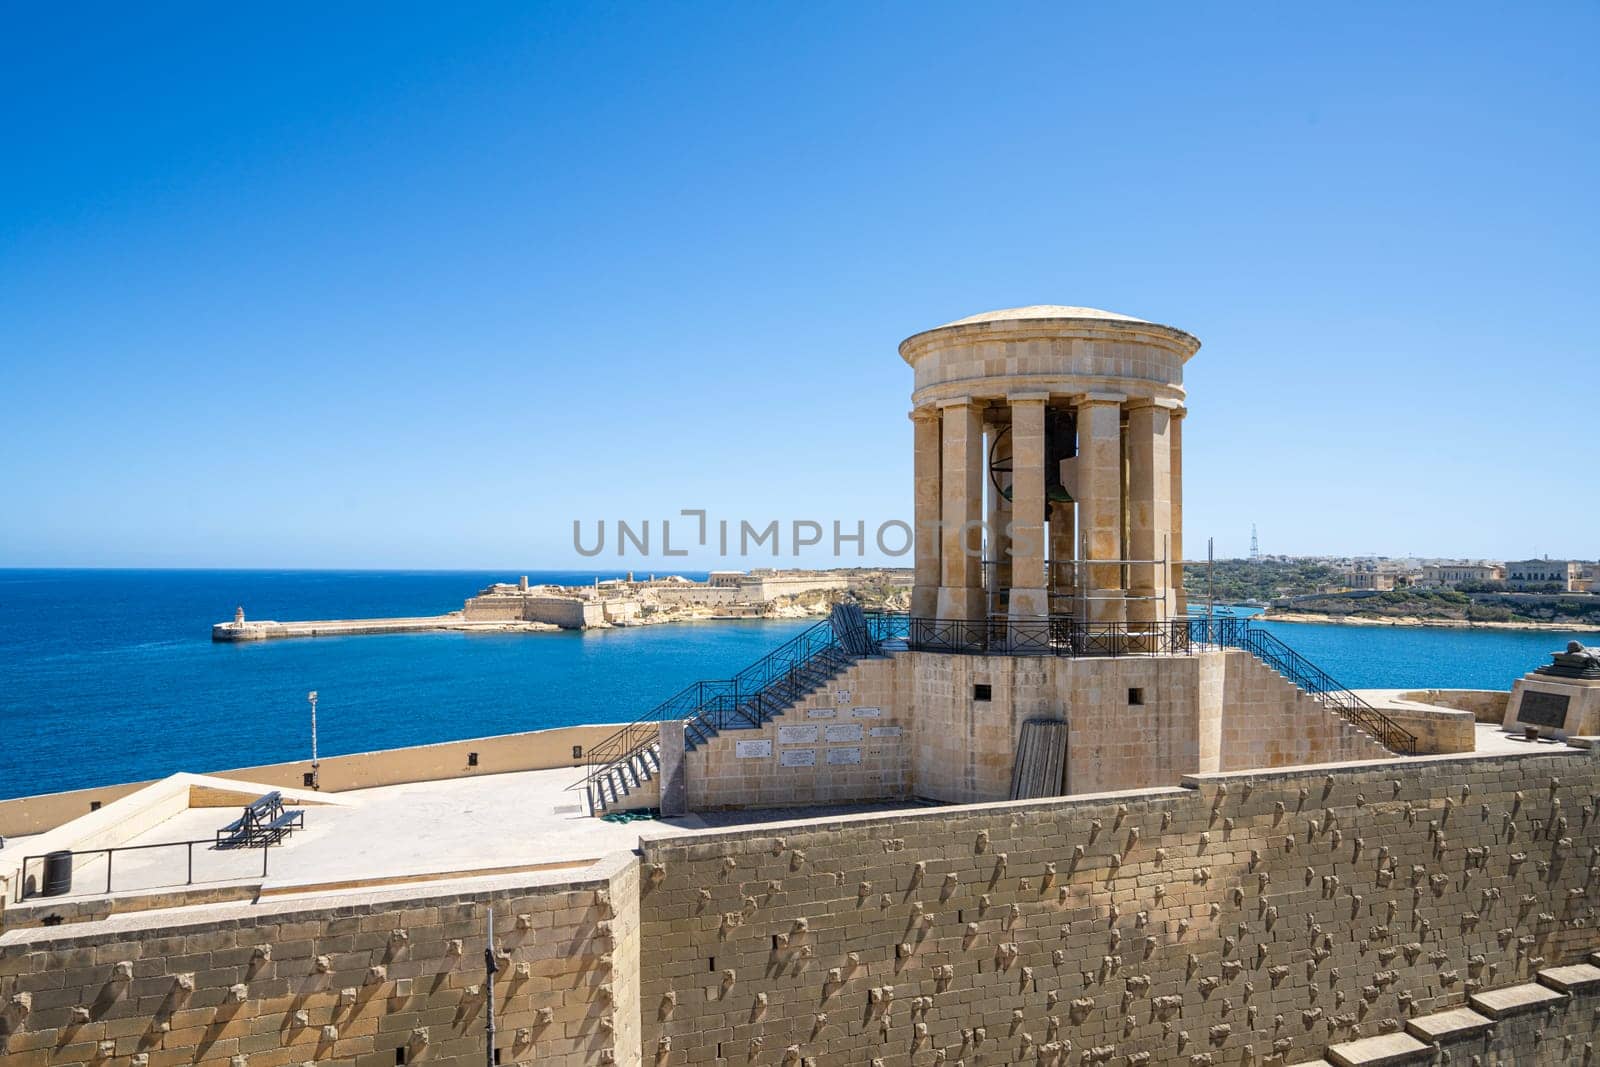 Siege Bell War Memorial in Valletta, Malta by sergiodv